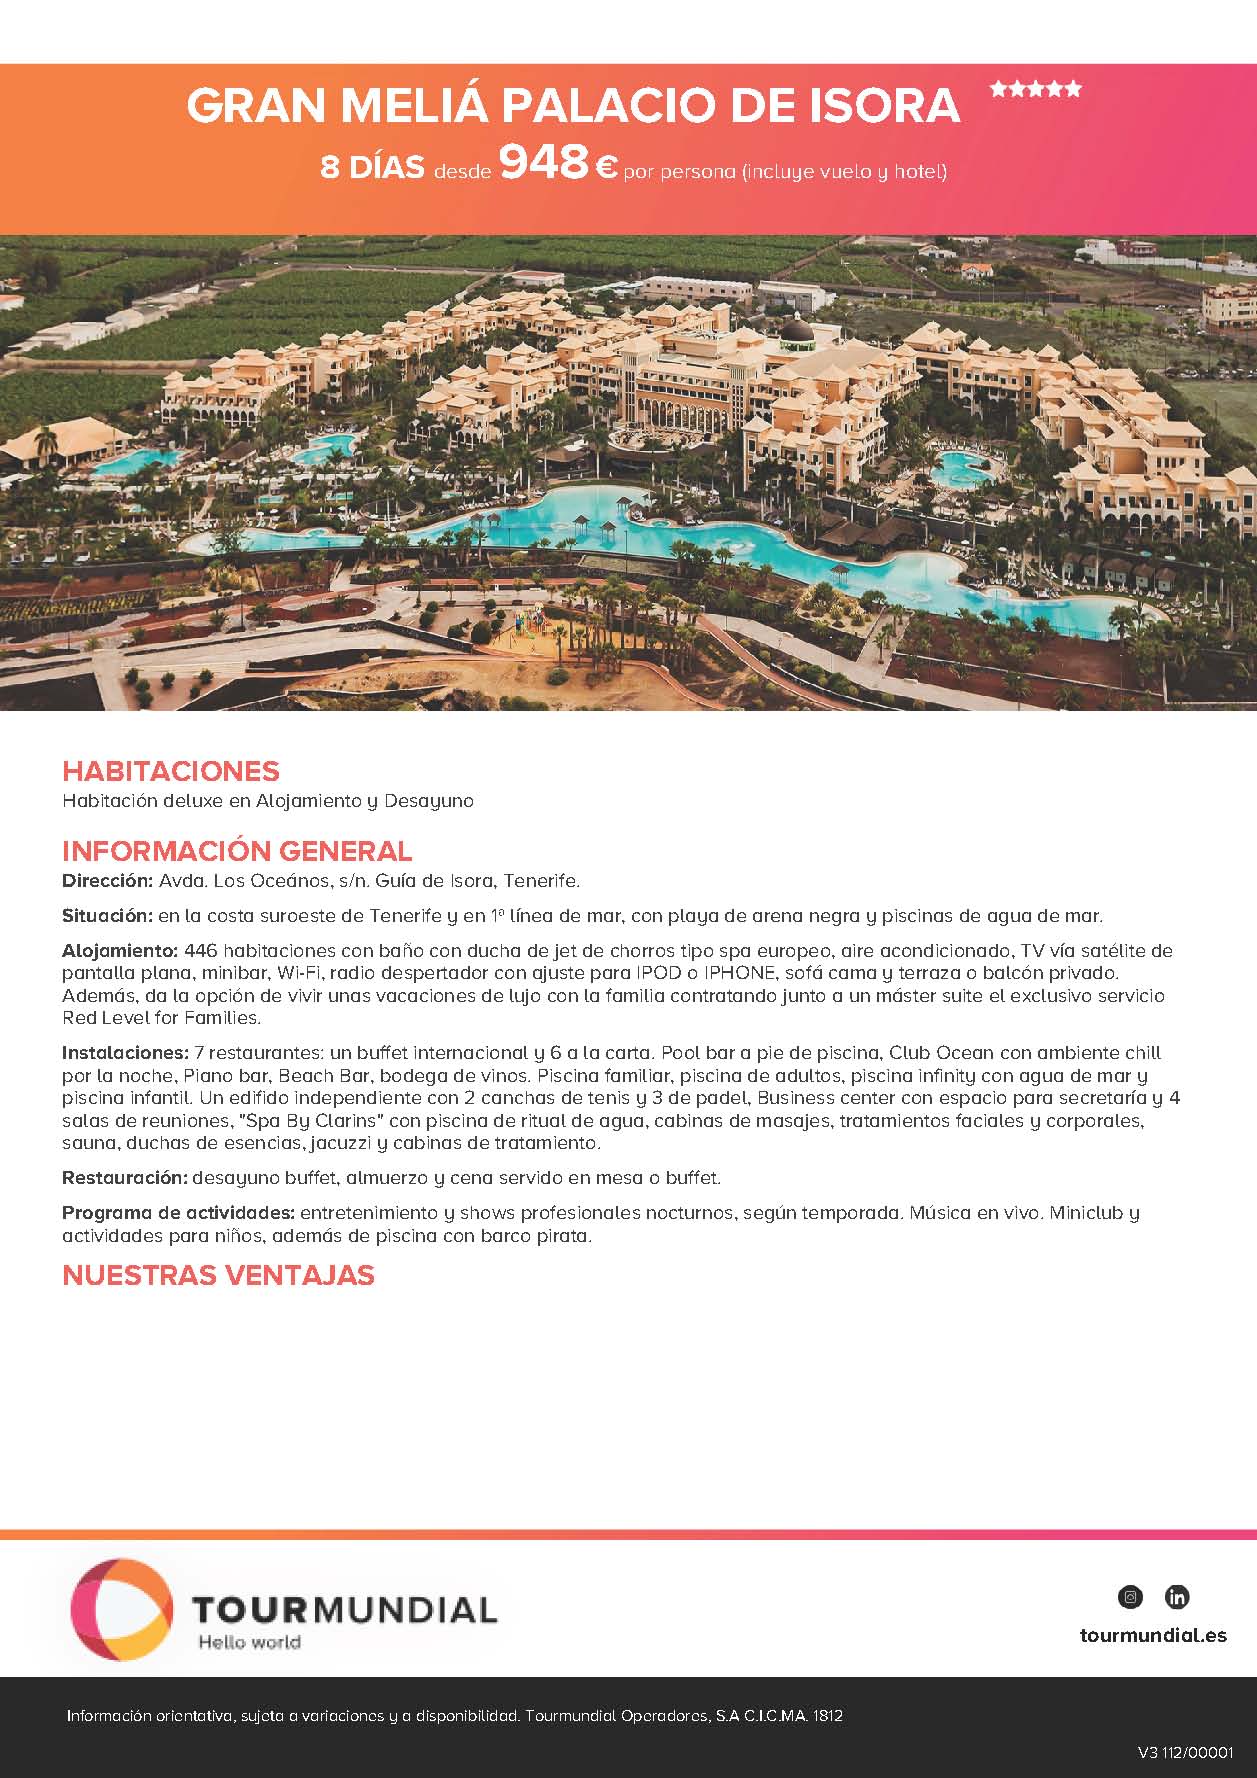 Oferta Tourmundial Vacaciones en Tenerife Guia de Isora Hotel Gran Melia Palacio de Isora 2021 8 dias desde 948€